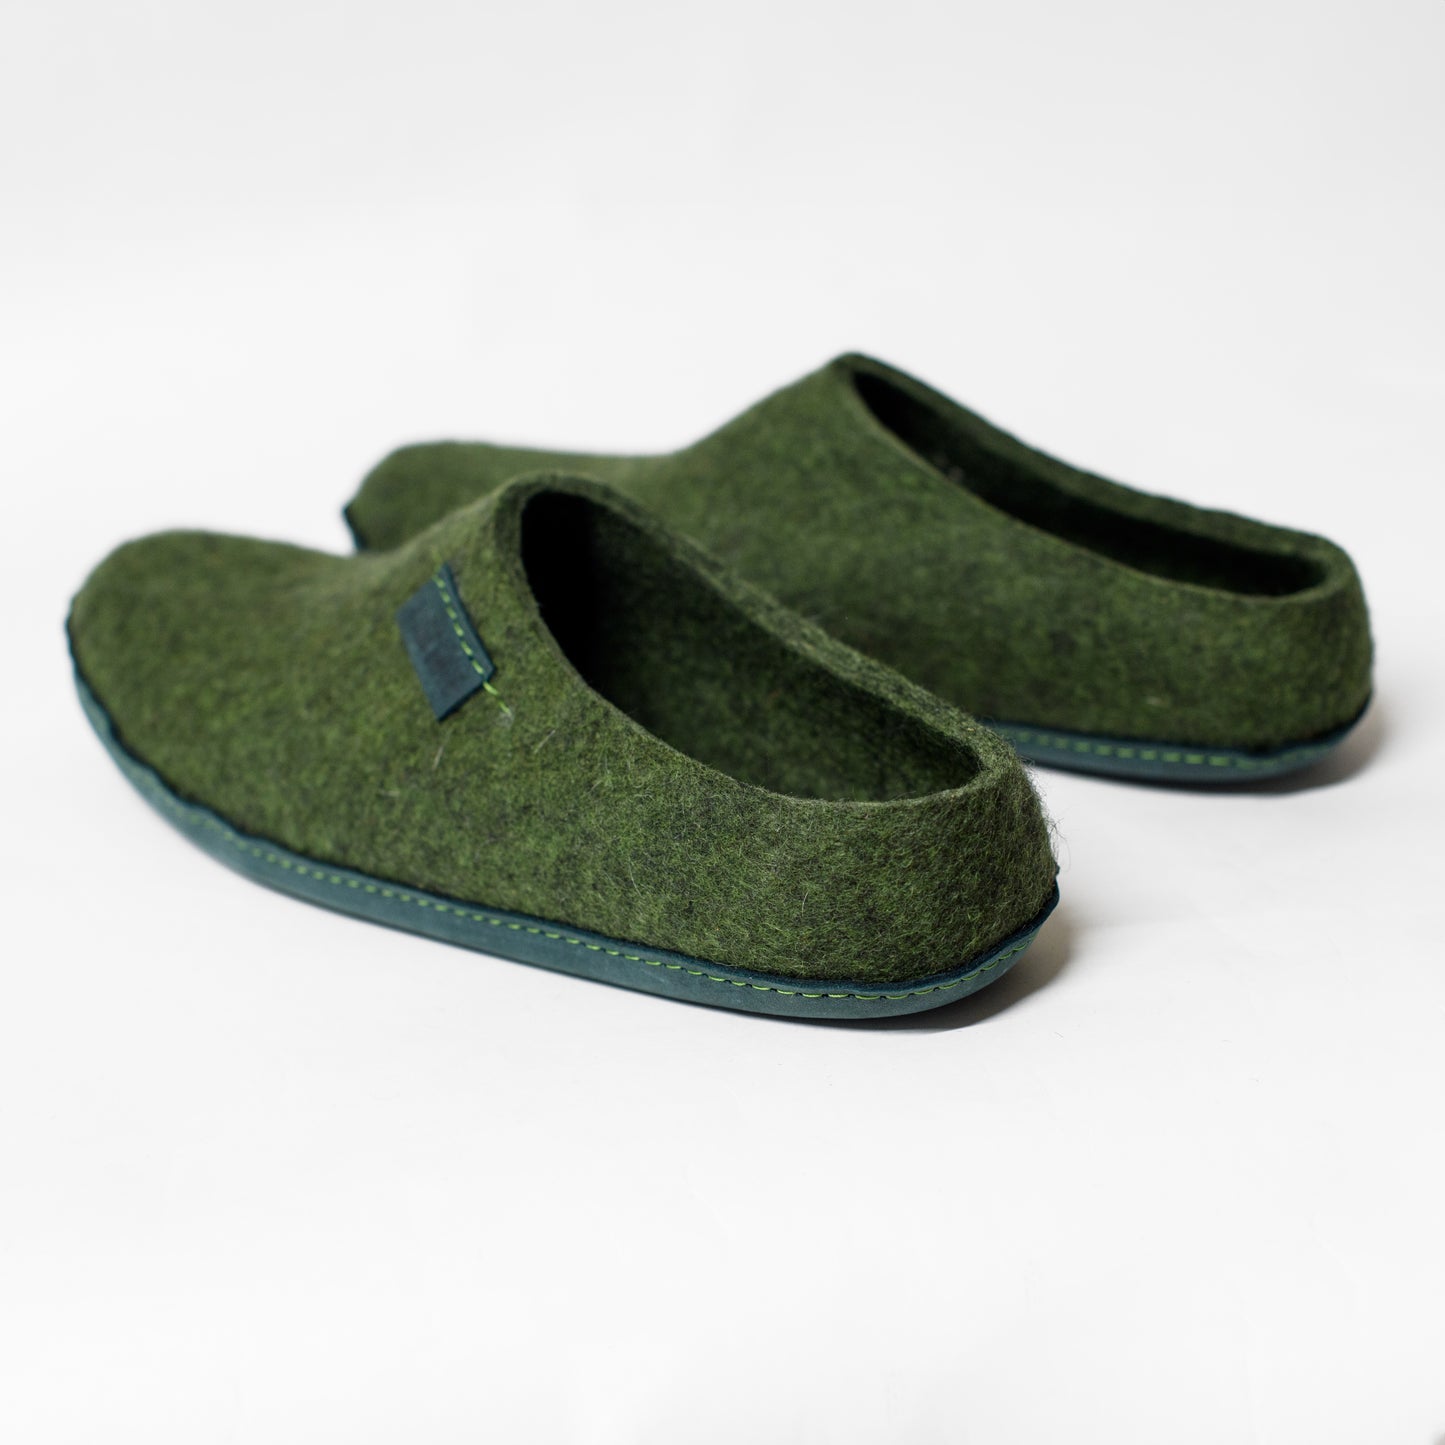 Easy to slip on men's slippers - Dark Olive